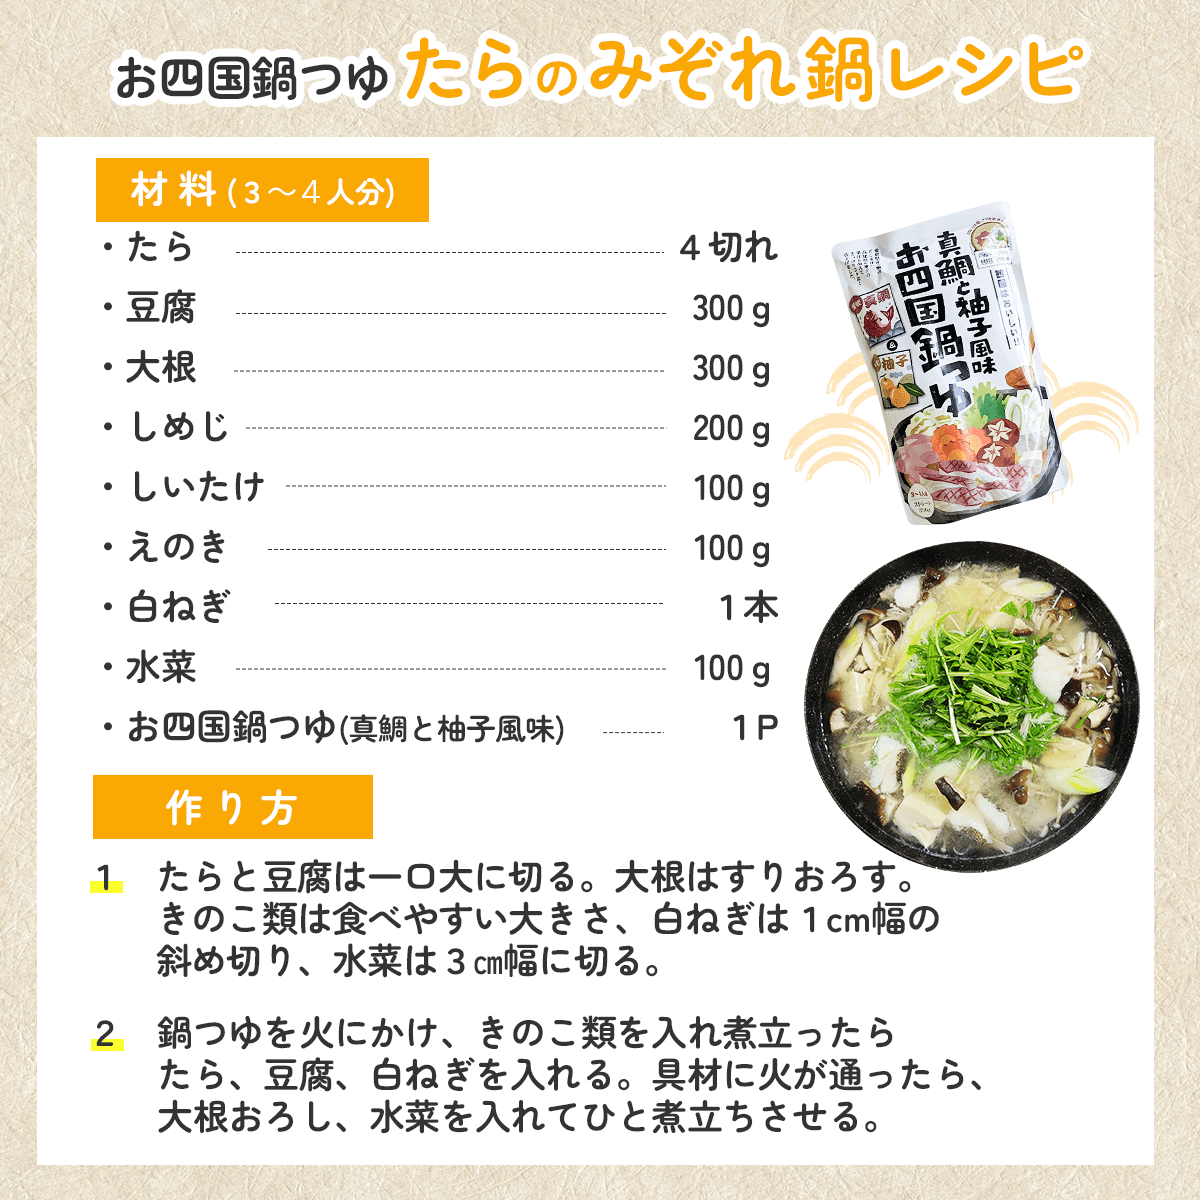 お四国鍋つゆ「たらのみぞれ鍋」レシピ